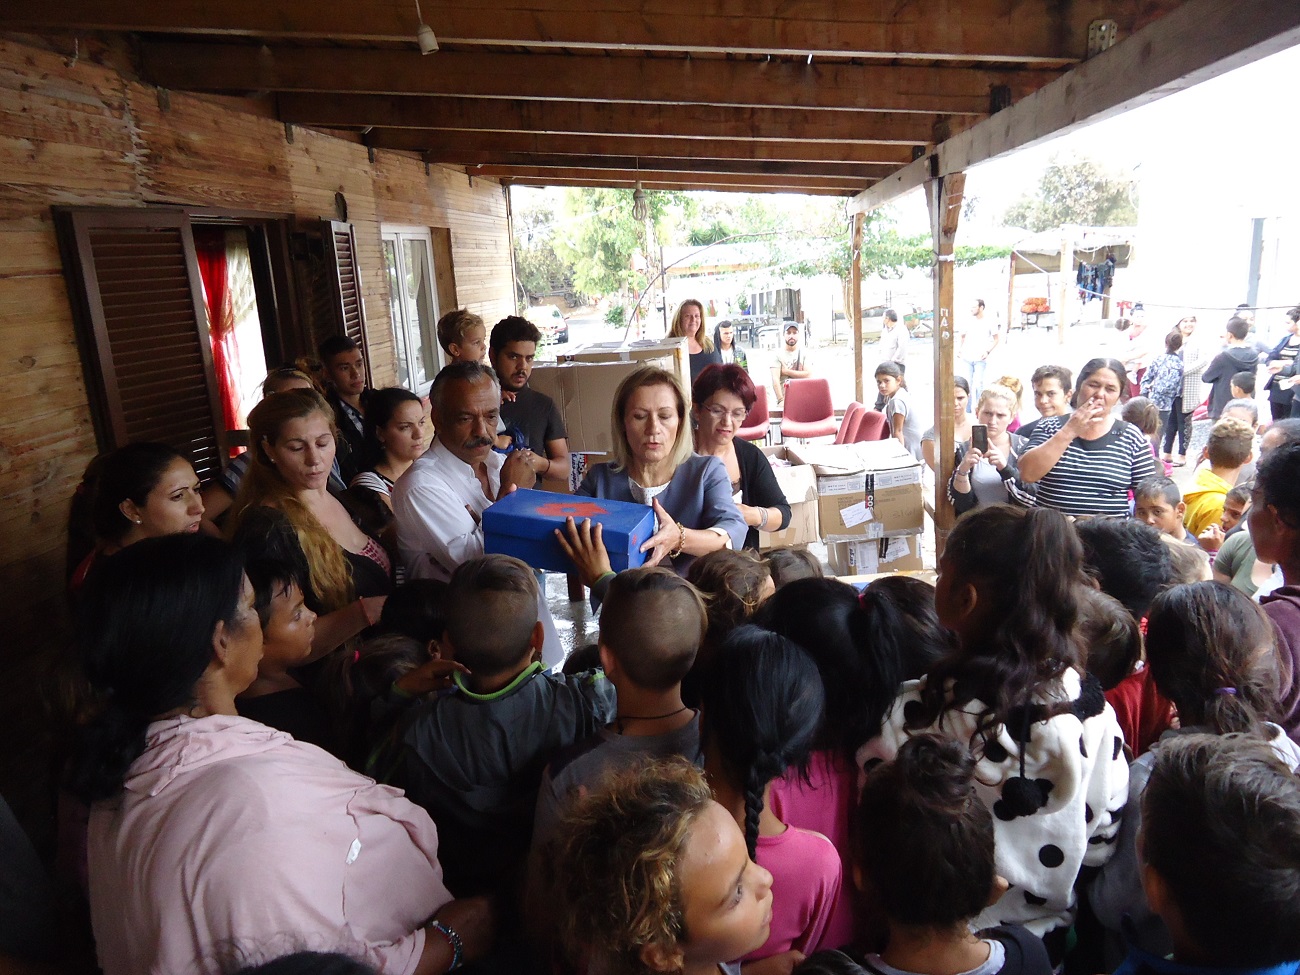 Κοινωνική δράση της Περιφέρειας Κρήτης στη κοινότητα των Ρομά στο Ηράκλειο